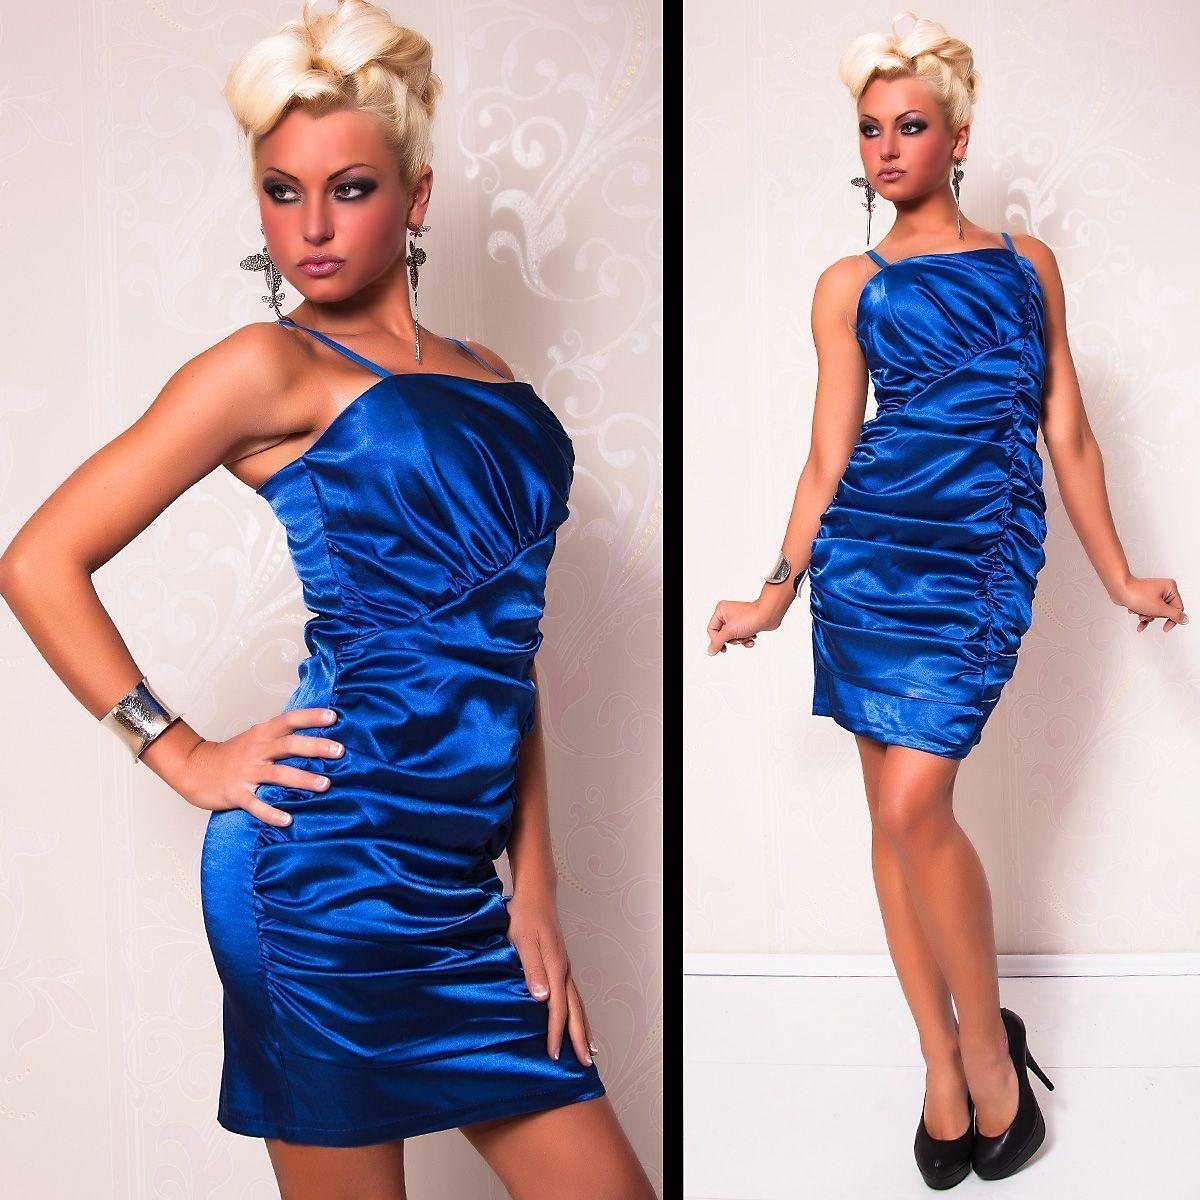 Синее атласное платье